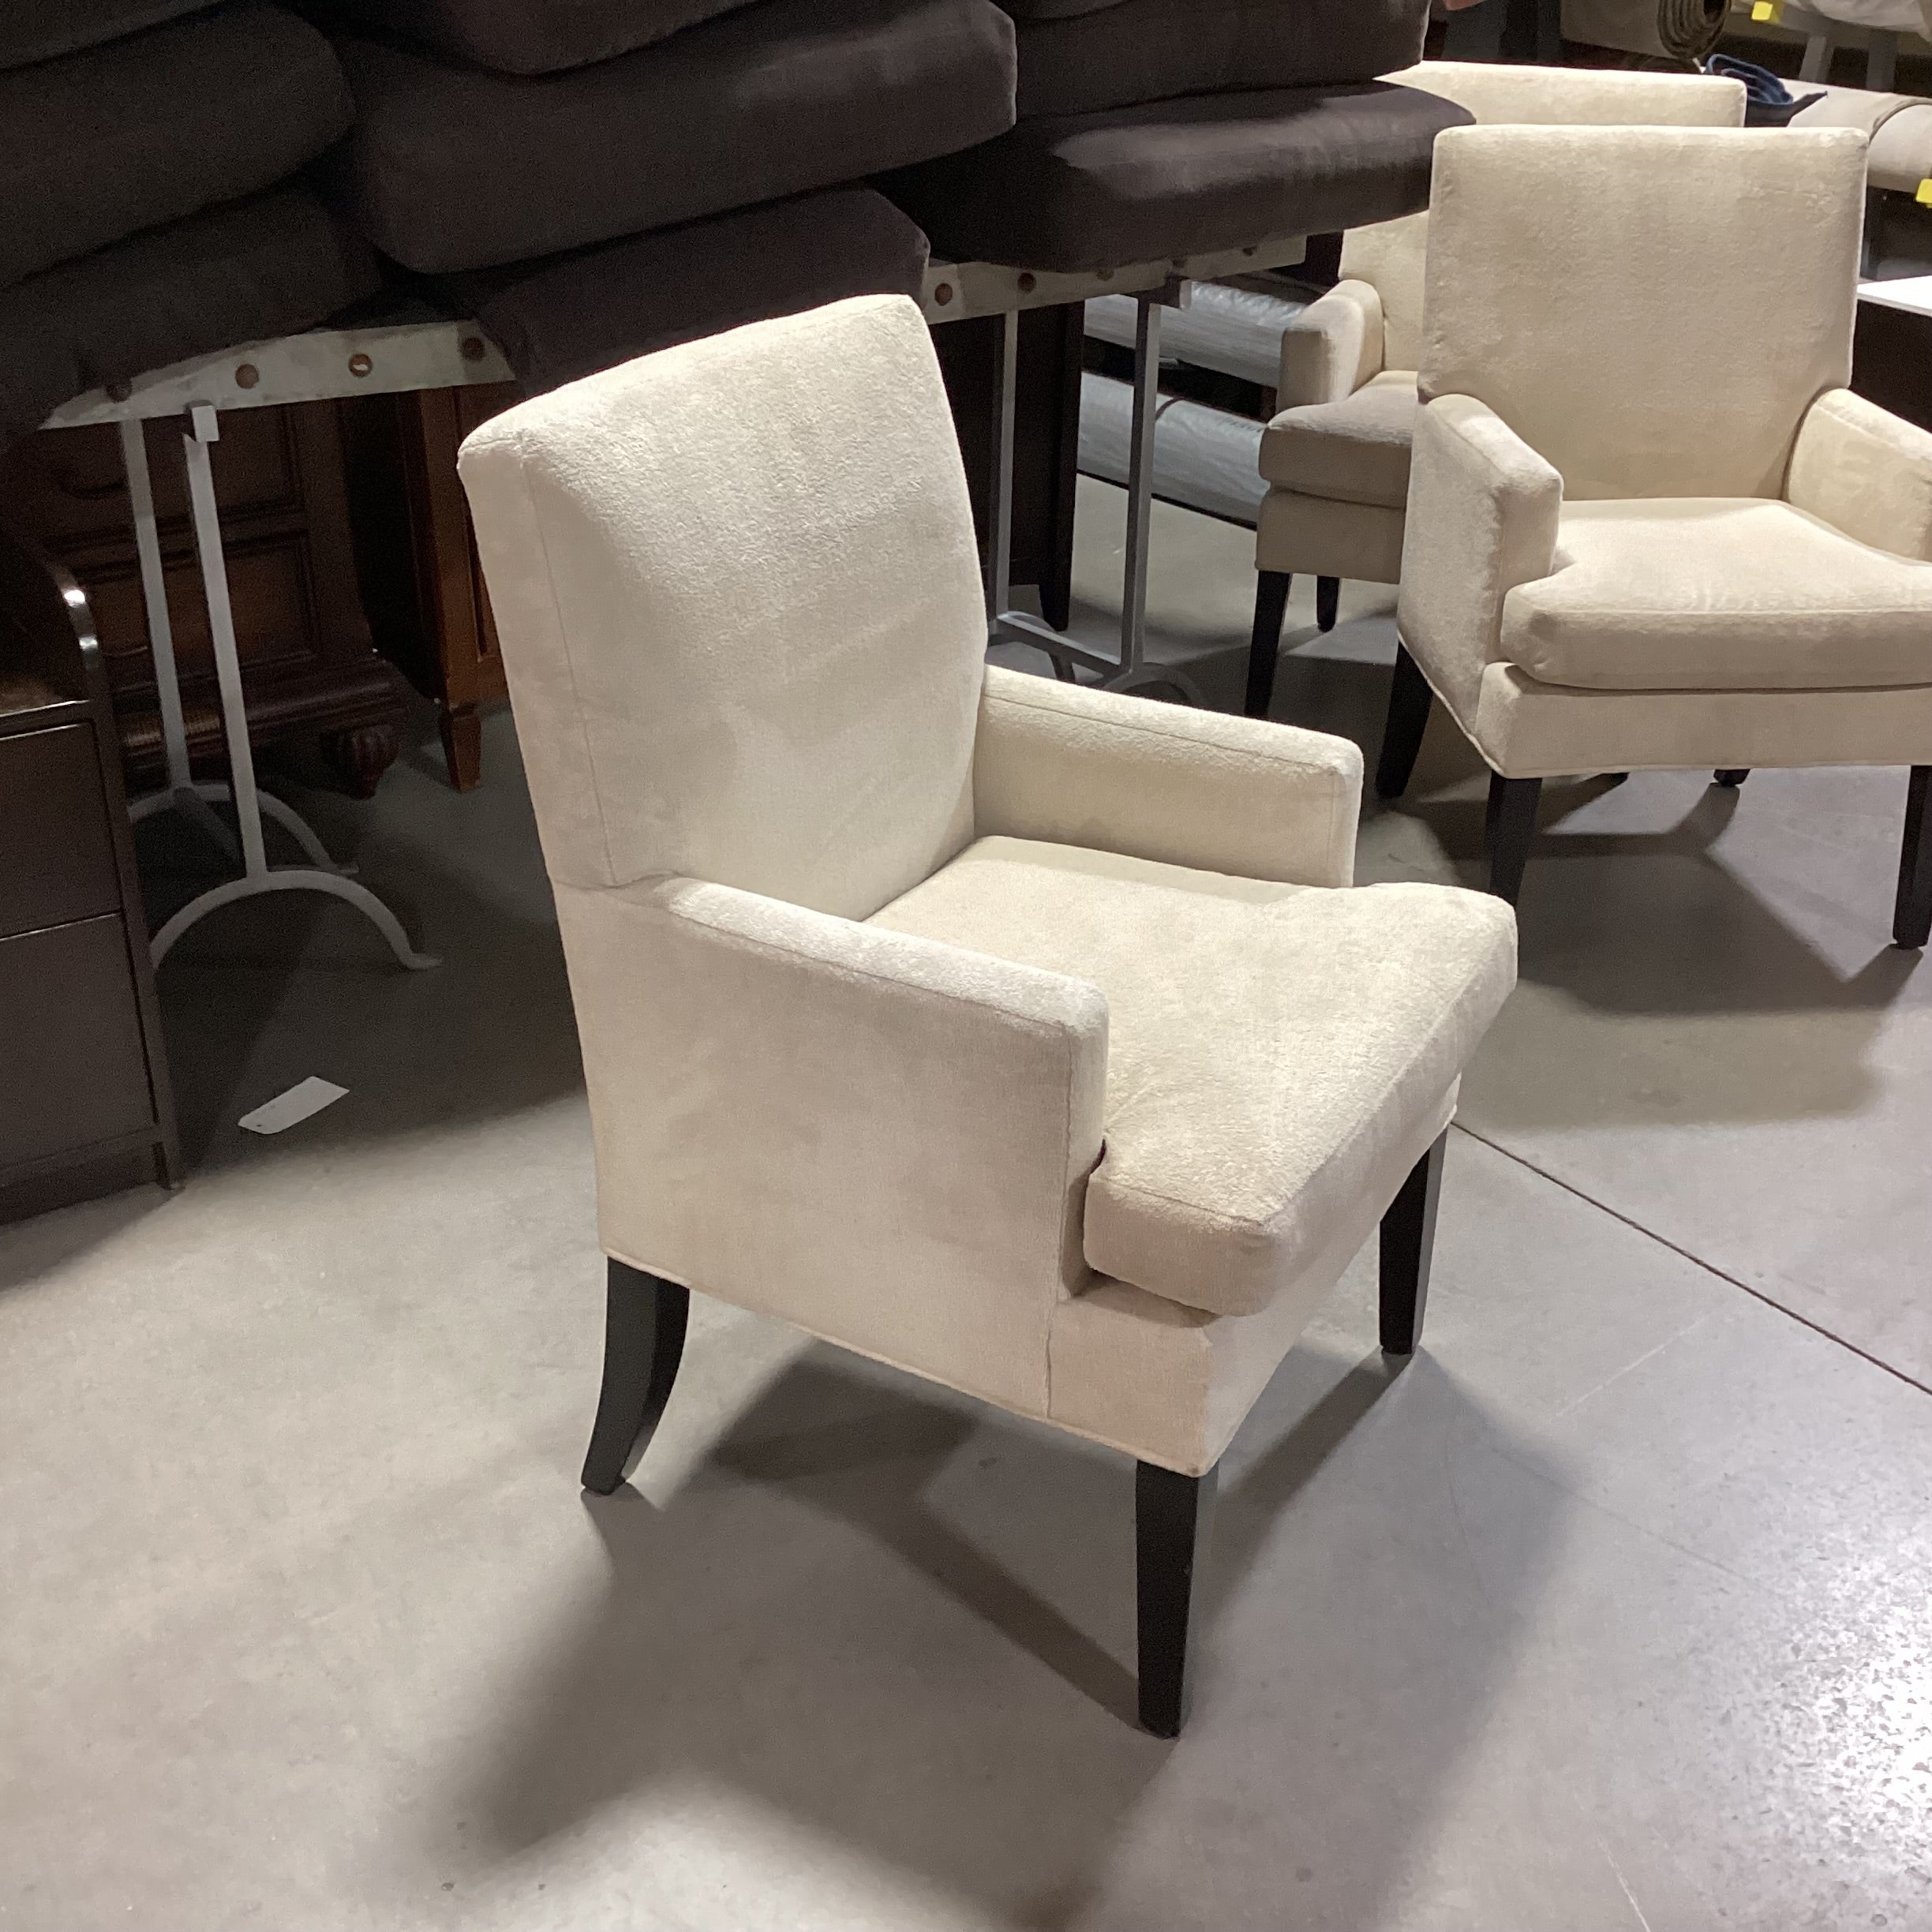 Lazar Industries Cream Black Leg Accent Chair 24.5"x 27"x 37"